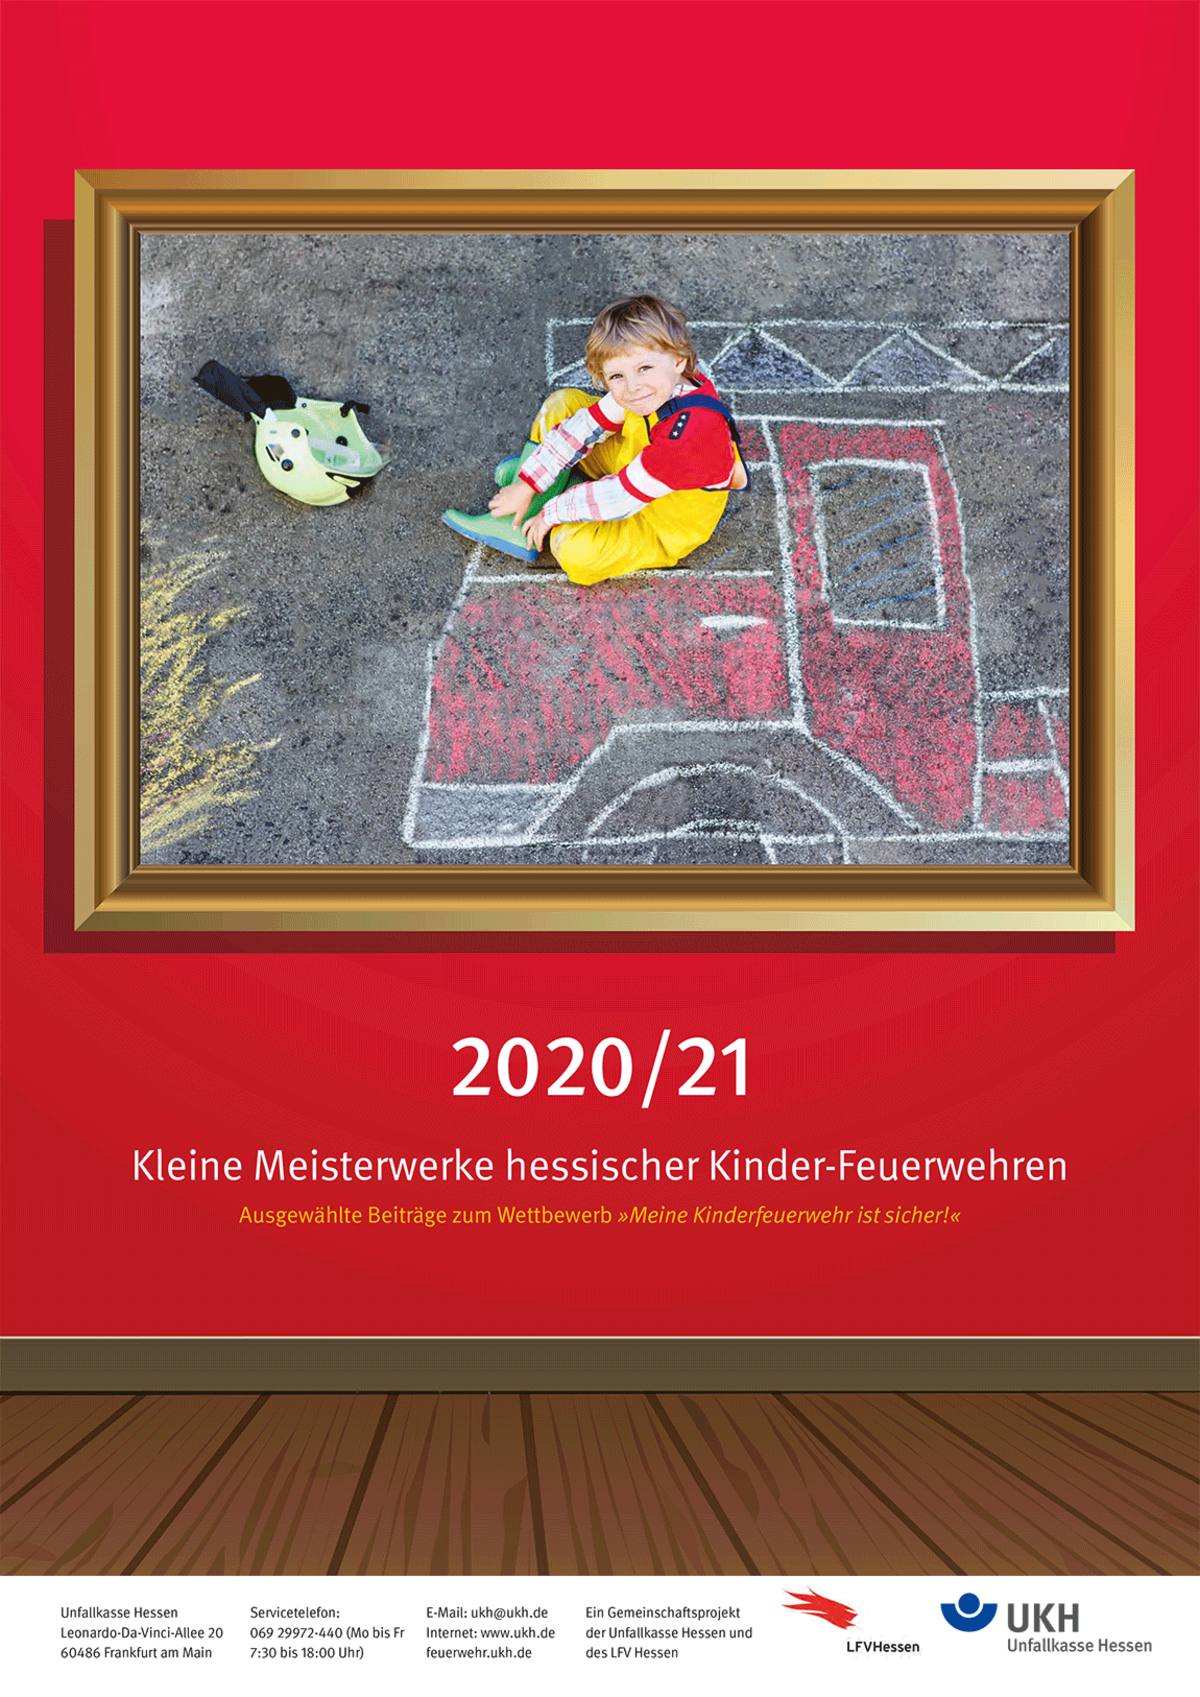 Titelseite des UKH Kalenders mit ausgewählten Beiträgen hessischer Kinderfeuerwehren zum Wettbewerb 2020